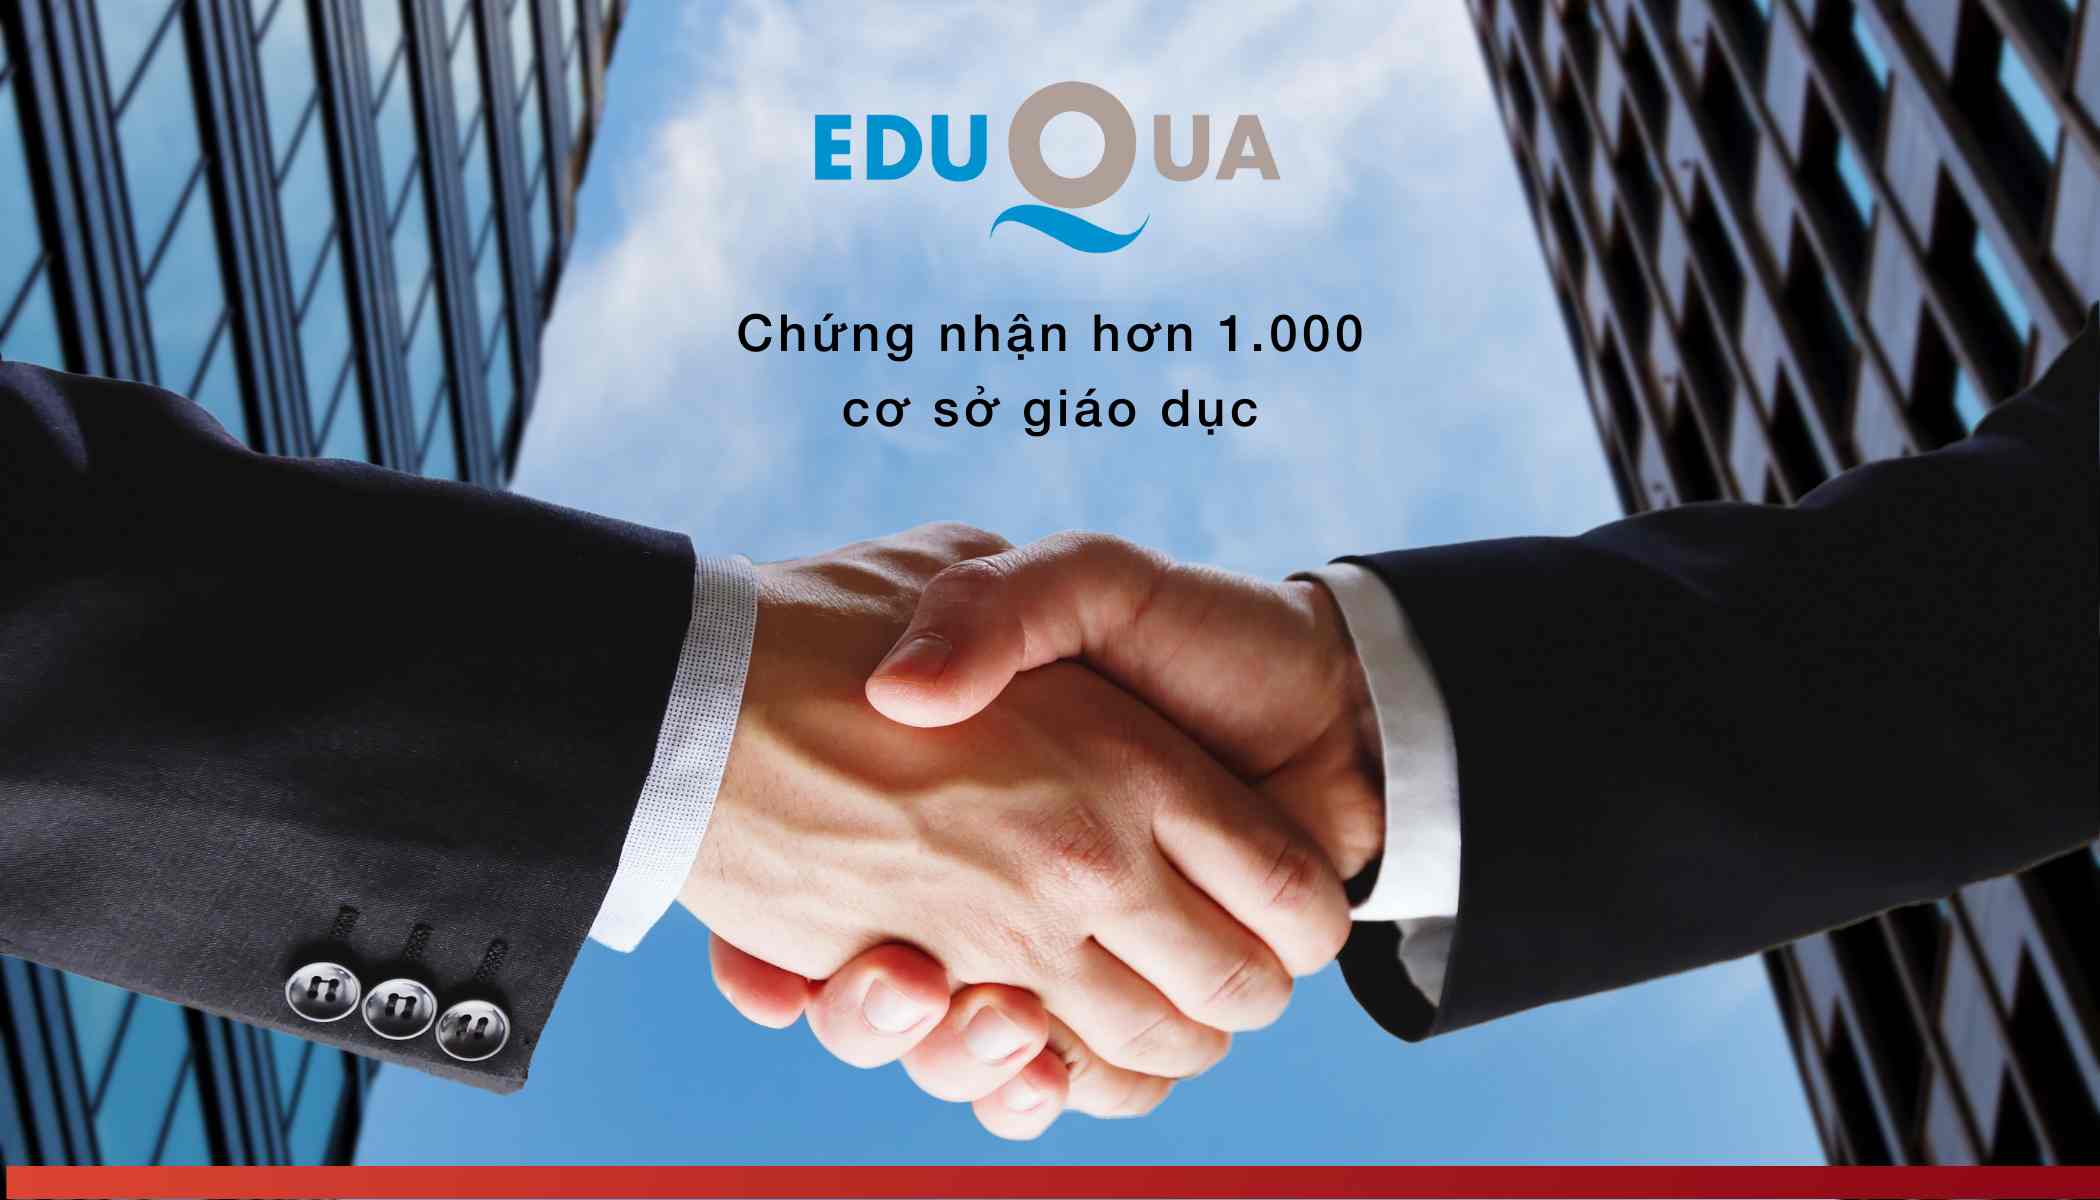 EduQua chứng nhận cho hơn 1.000 cơ sở giáo dục